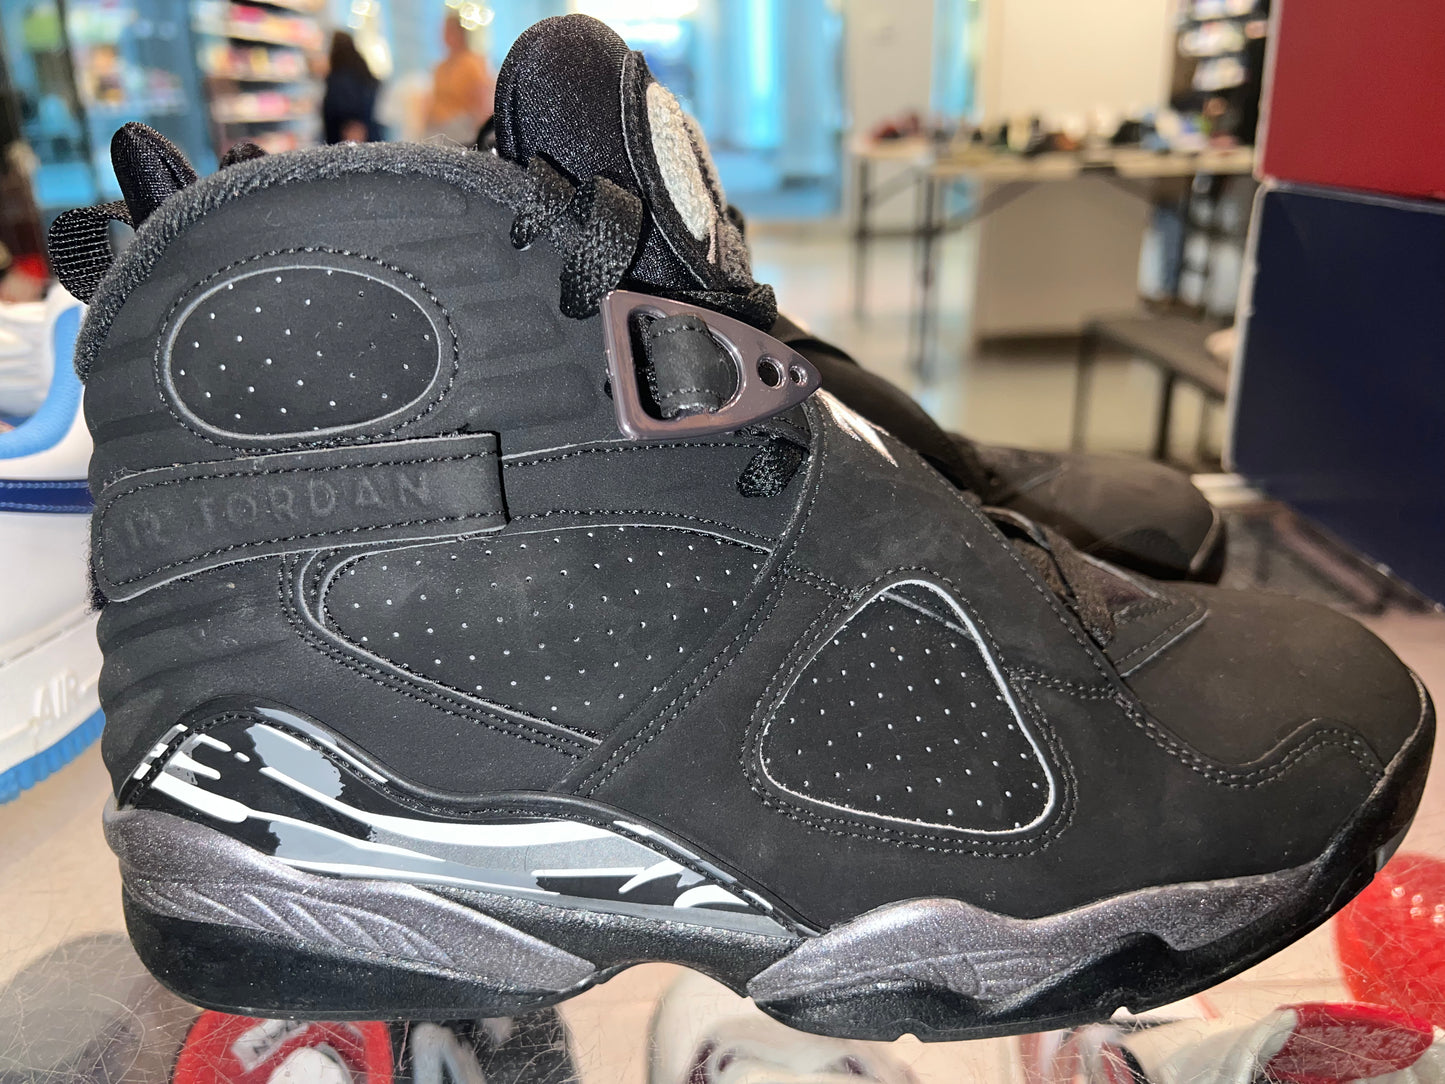 Size 7.5 Air Jordan 8 “Chrome” (Mall)